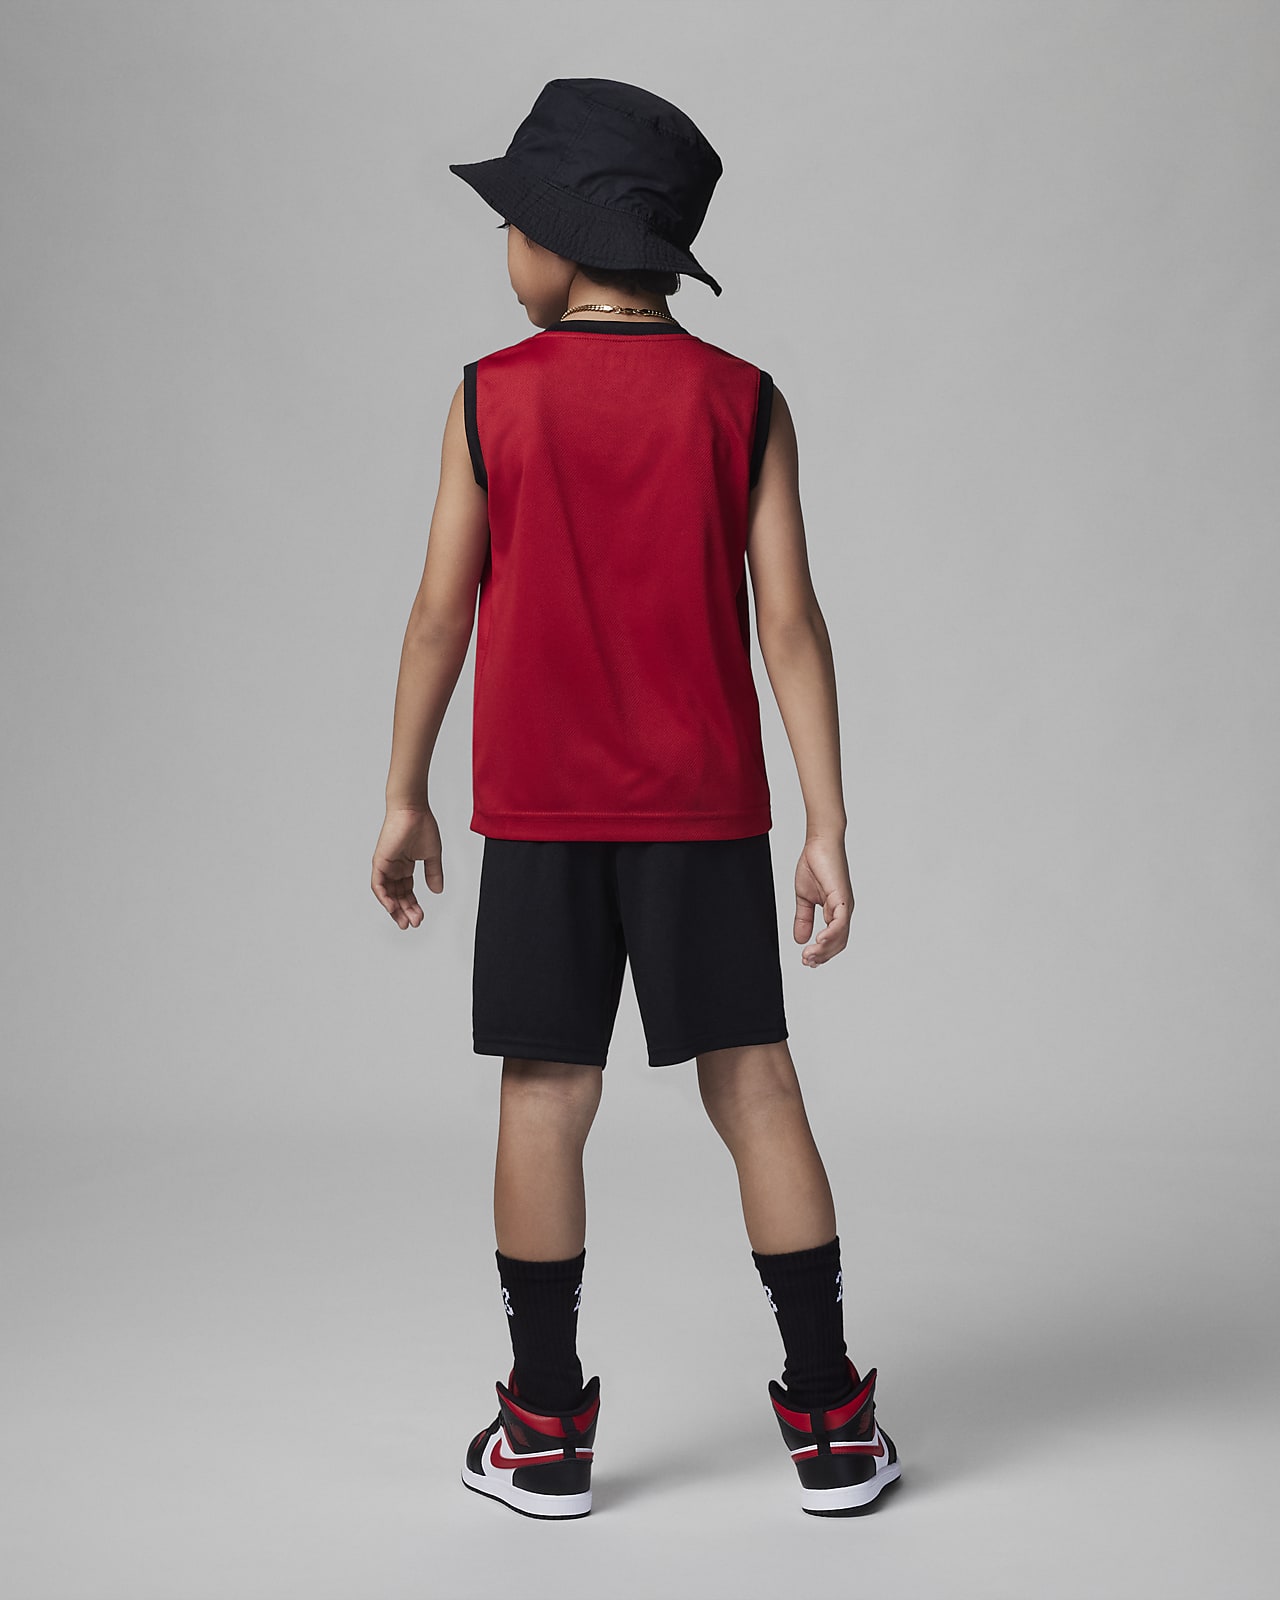 (取寄) ジョーダン リトルキッズ ジャンプマン トゥー トレイ バスケットボール シューズ Little Kids' Jordan Jumpman Two Trey Basketball Shoes